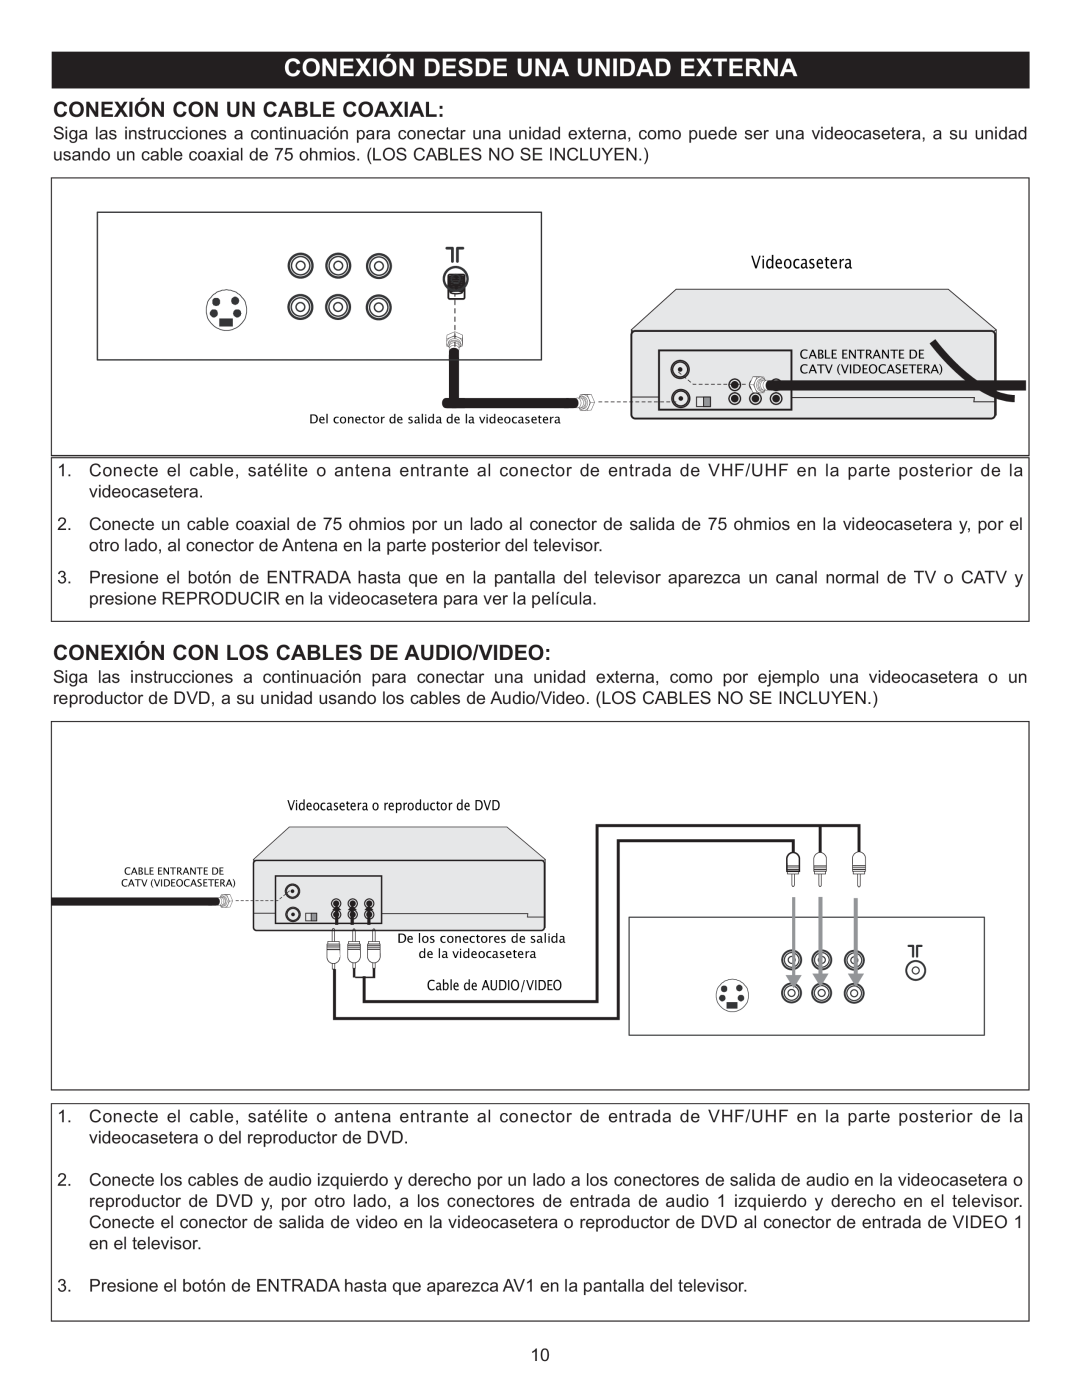 Memorex MT2028D-BLK manual Conexión Con Un Cable Coaxial, Conexión Con Los Cables De Audio/Video 